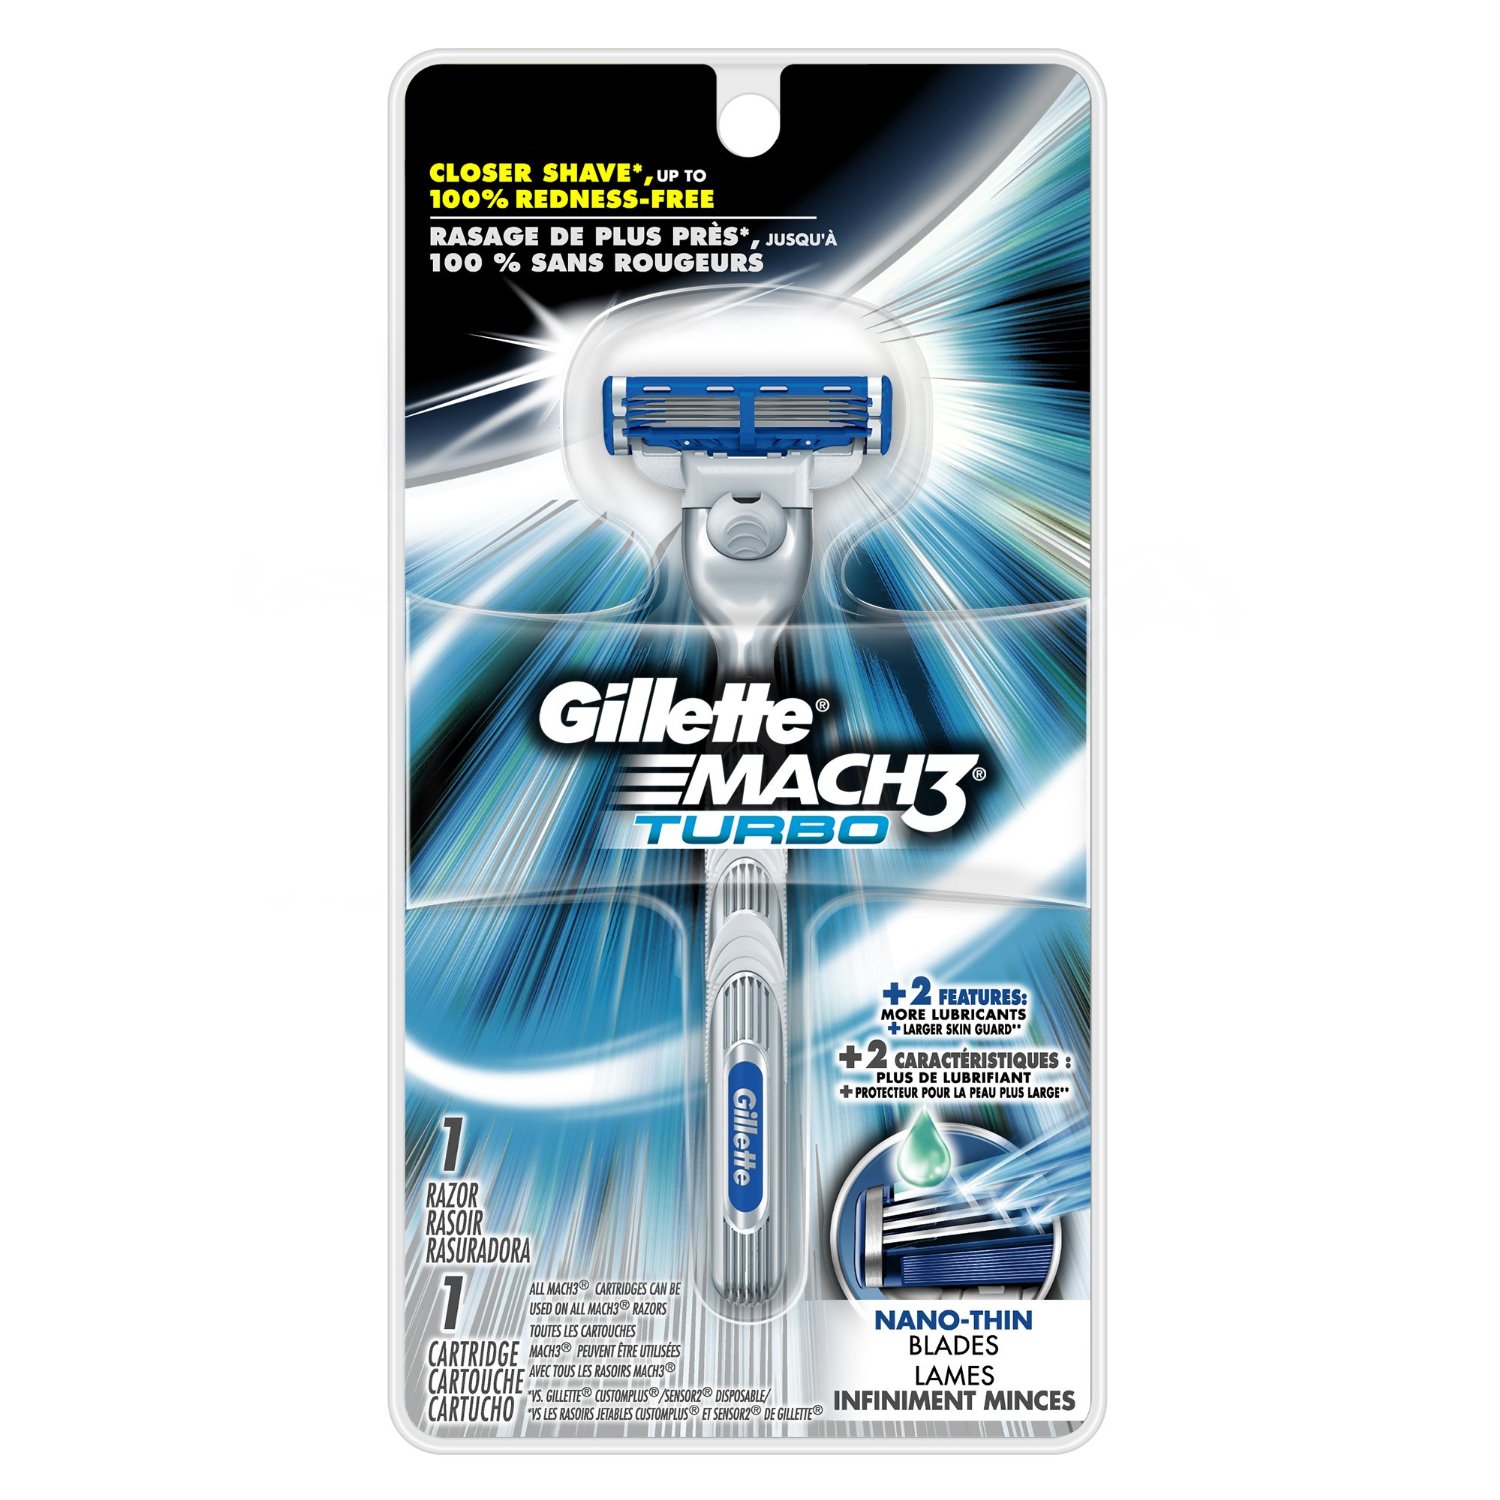 Gillette Mach3 Turbo Men's Razor (Handle w/ 1x Refill)  $2.70 & More + Free Shipping